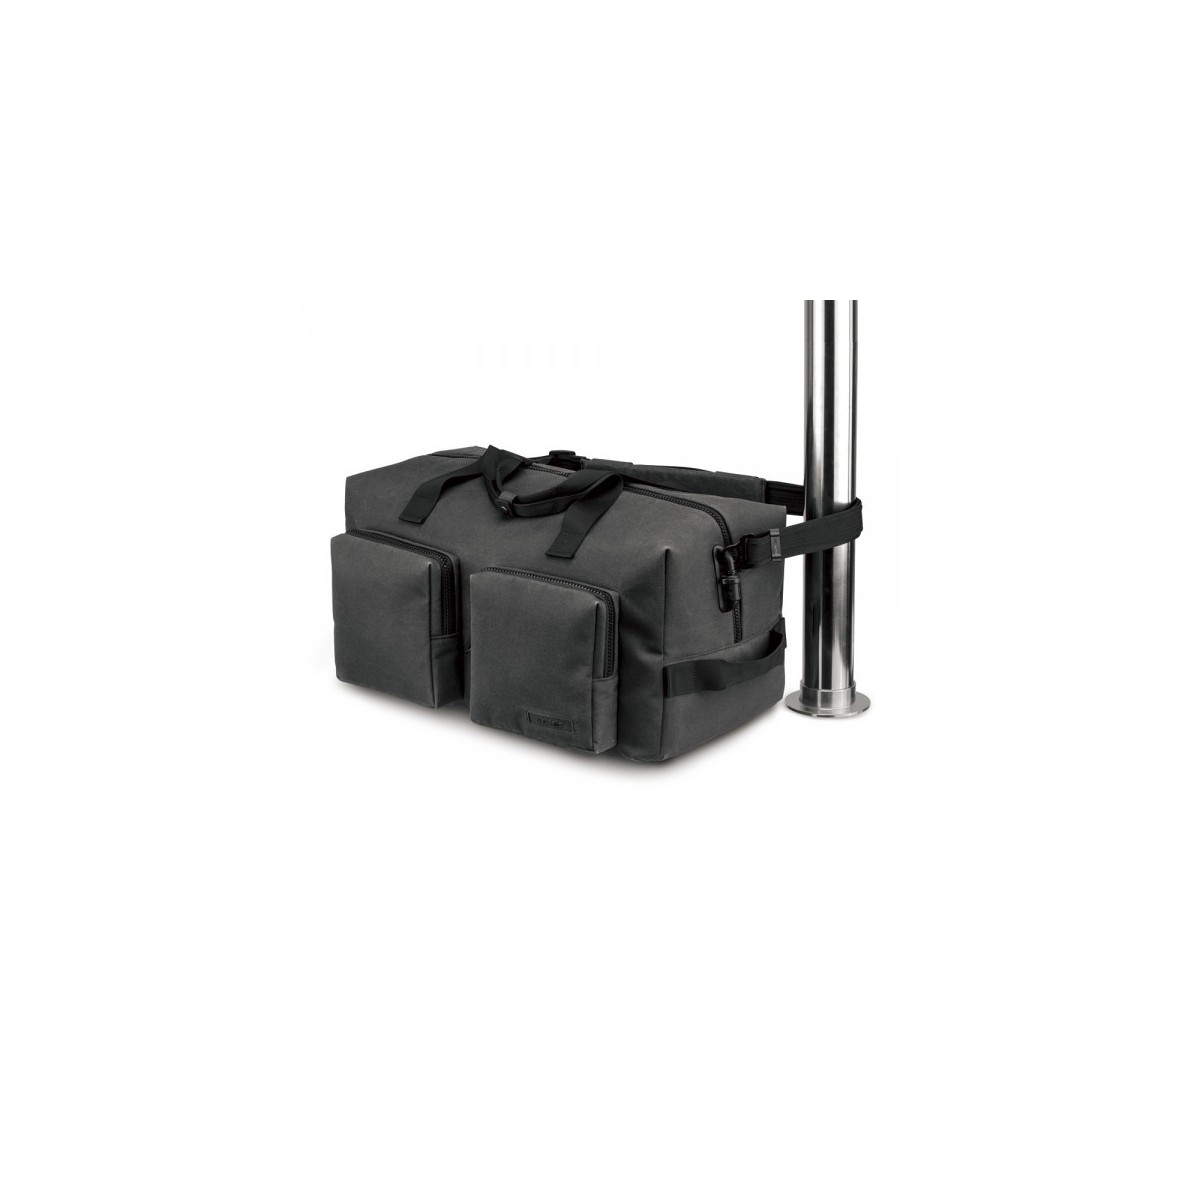 กระเป๋าสะพาย Intasafe™ Z600 anti-theft weekender duffel